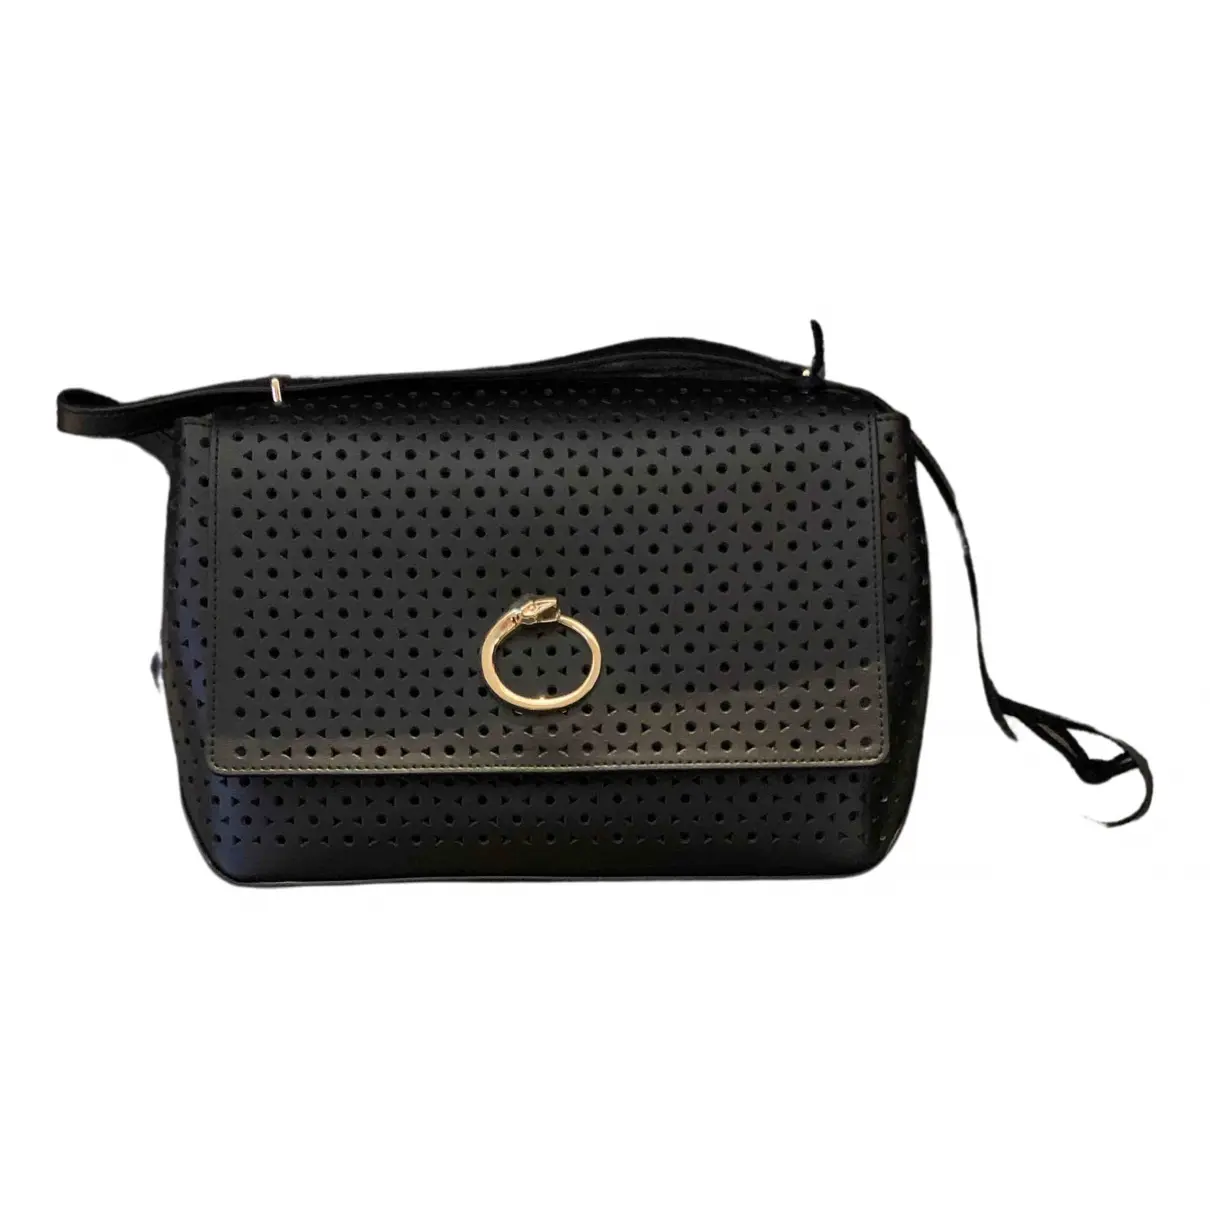 Leather handbag Class Cavalli - Vintage